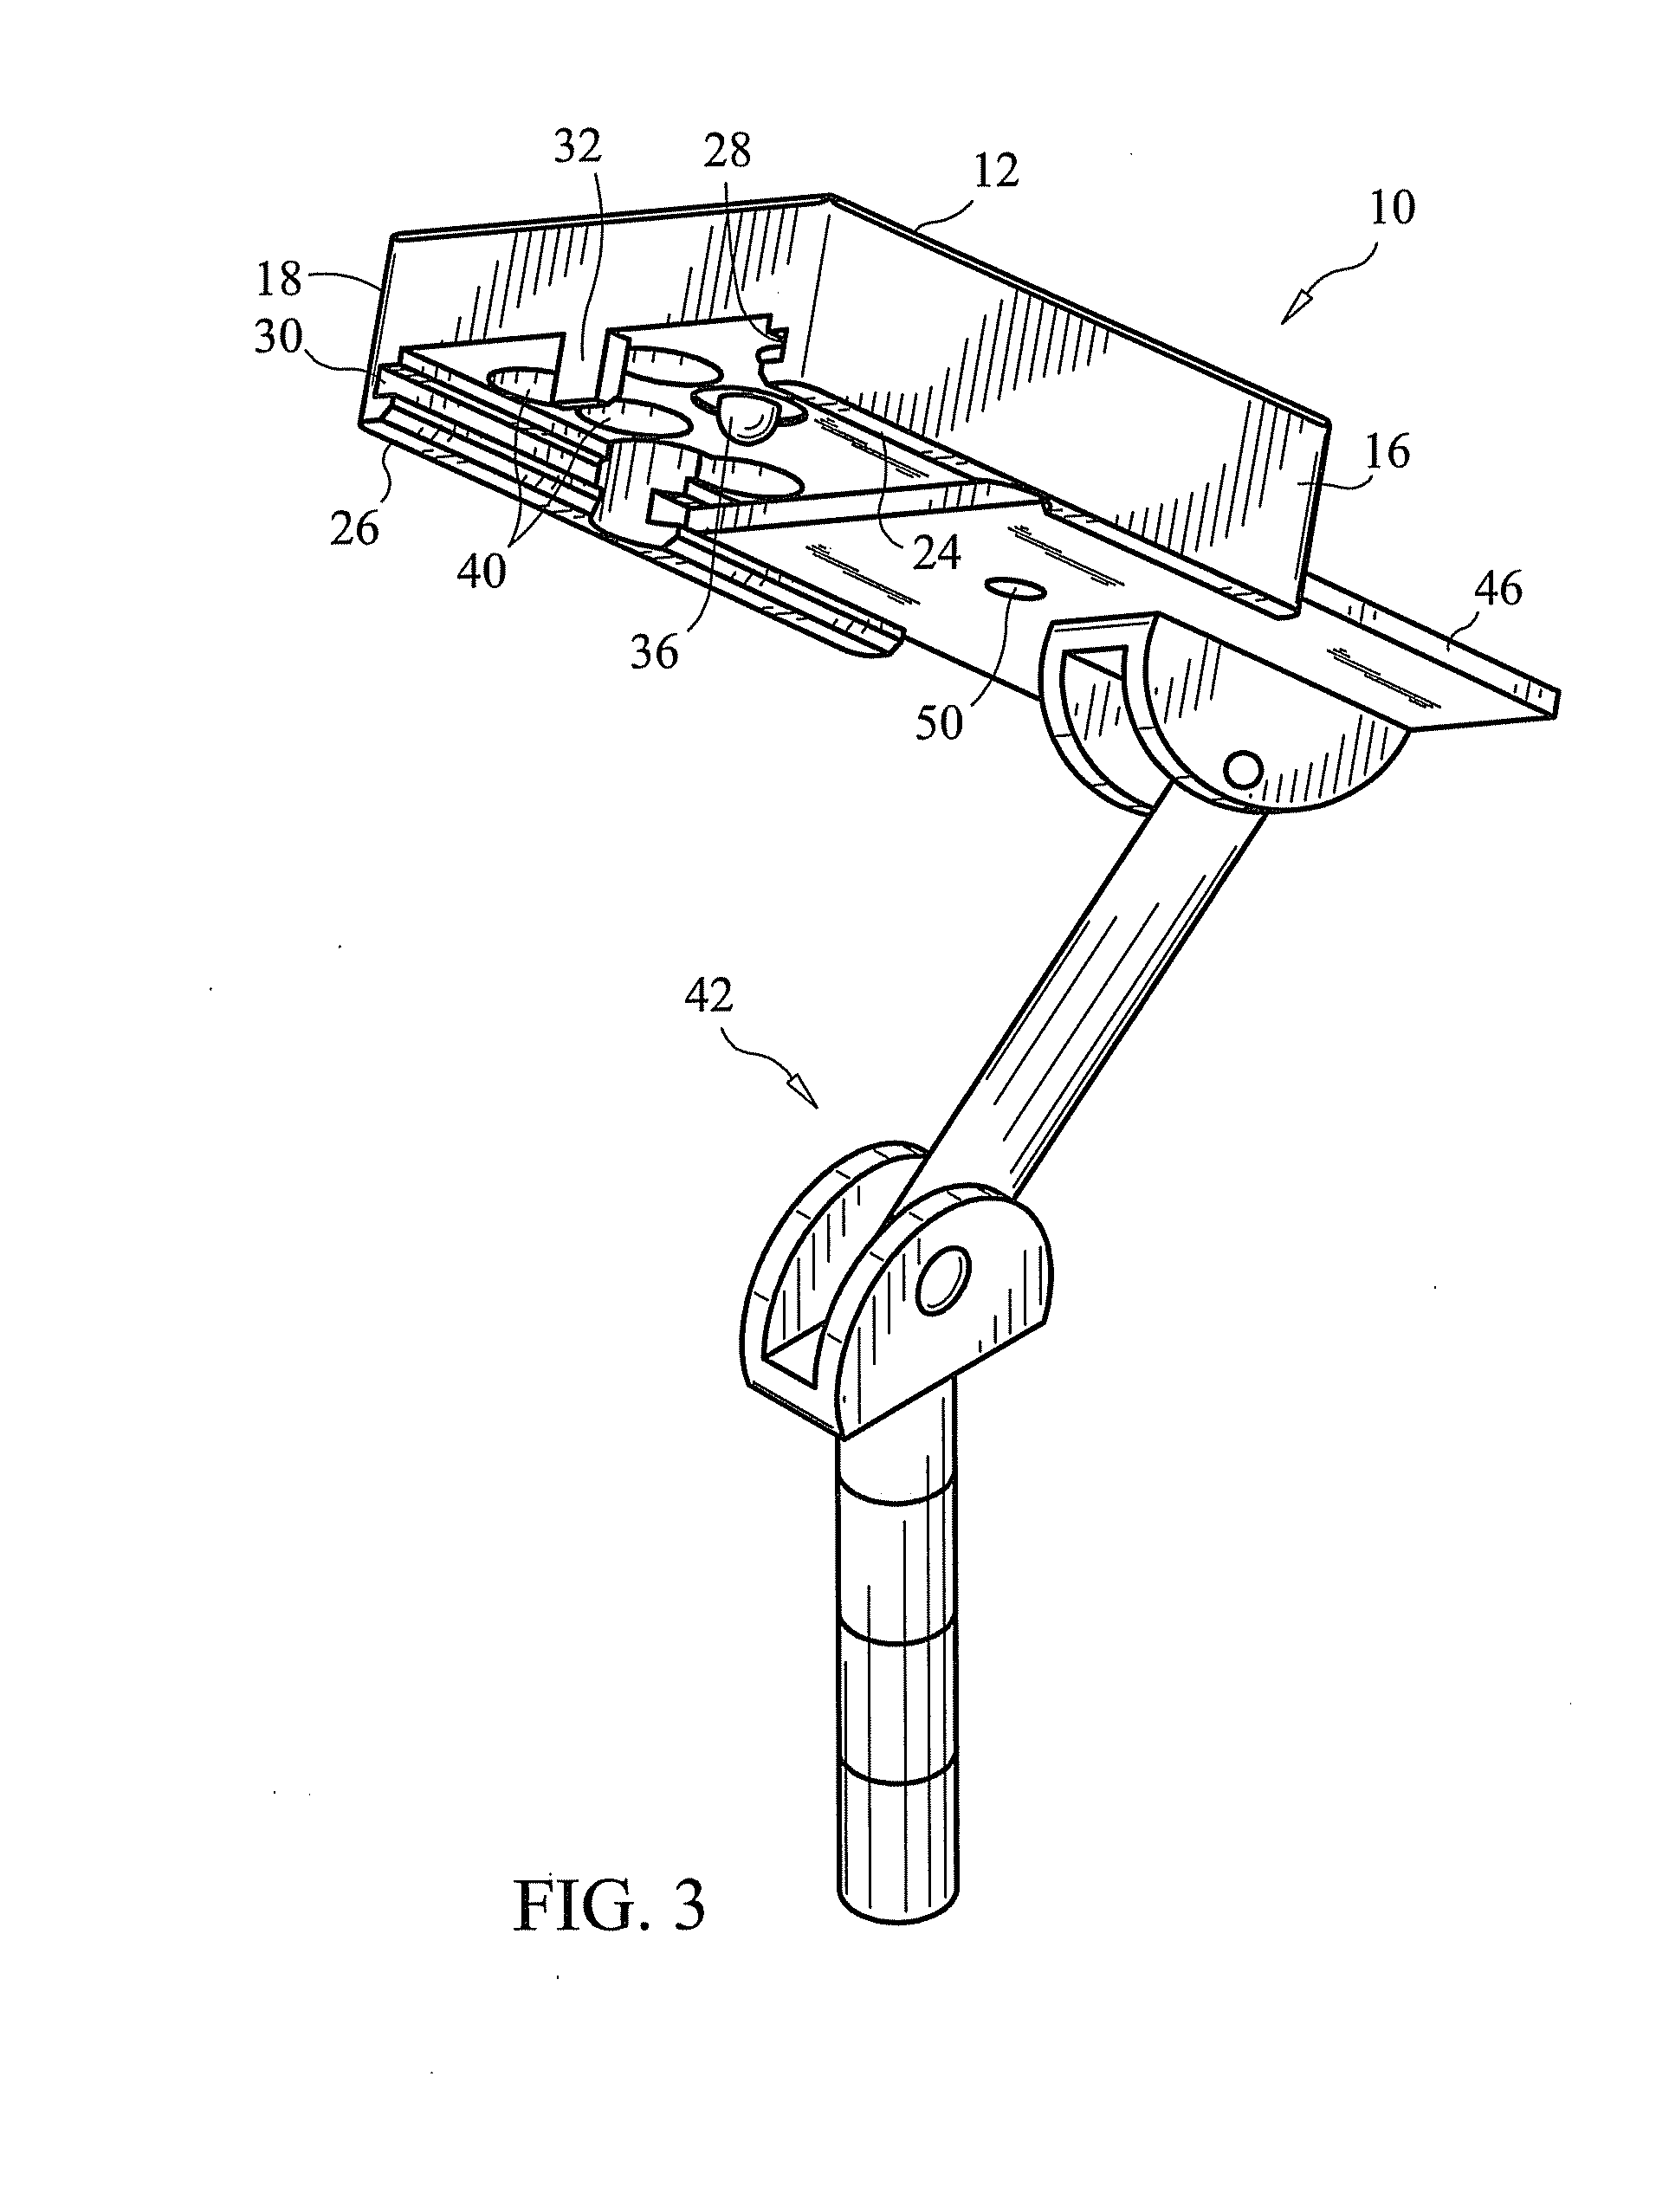 Adaptor for vehicle mounts